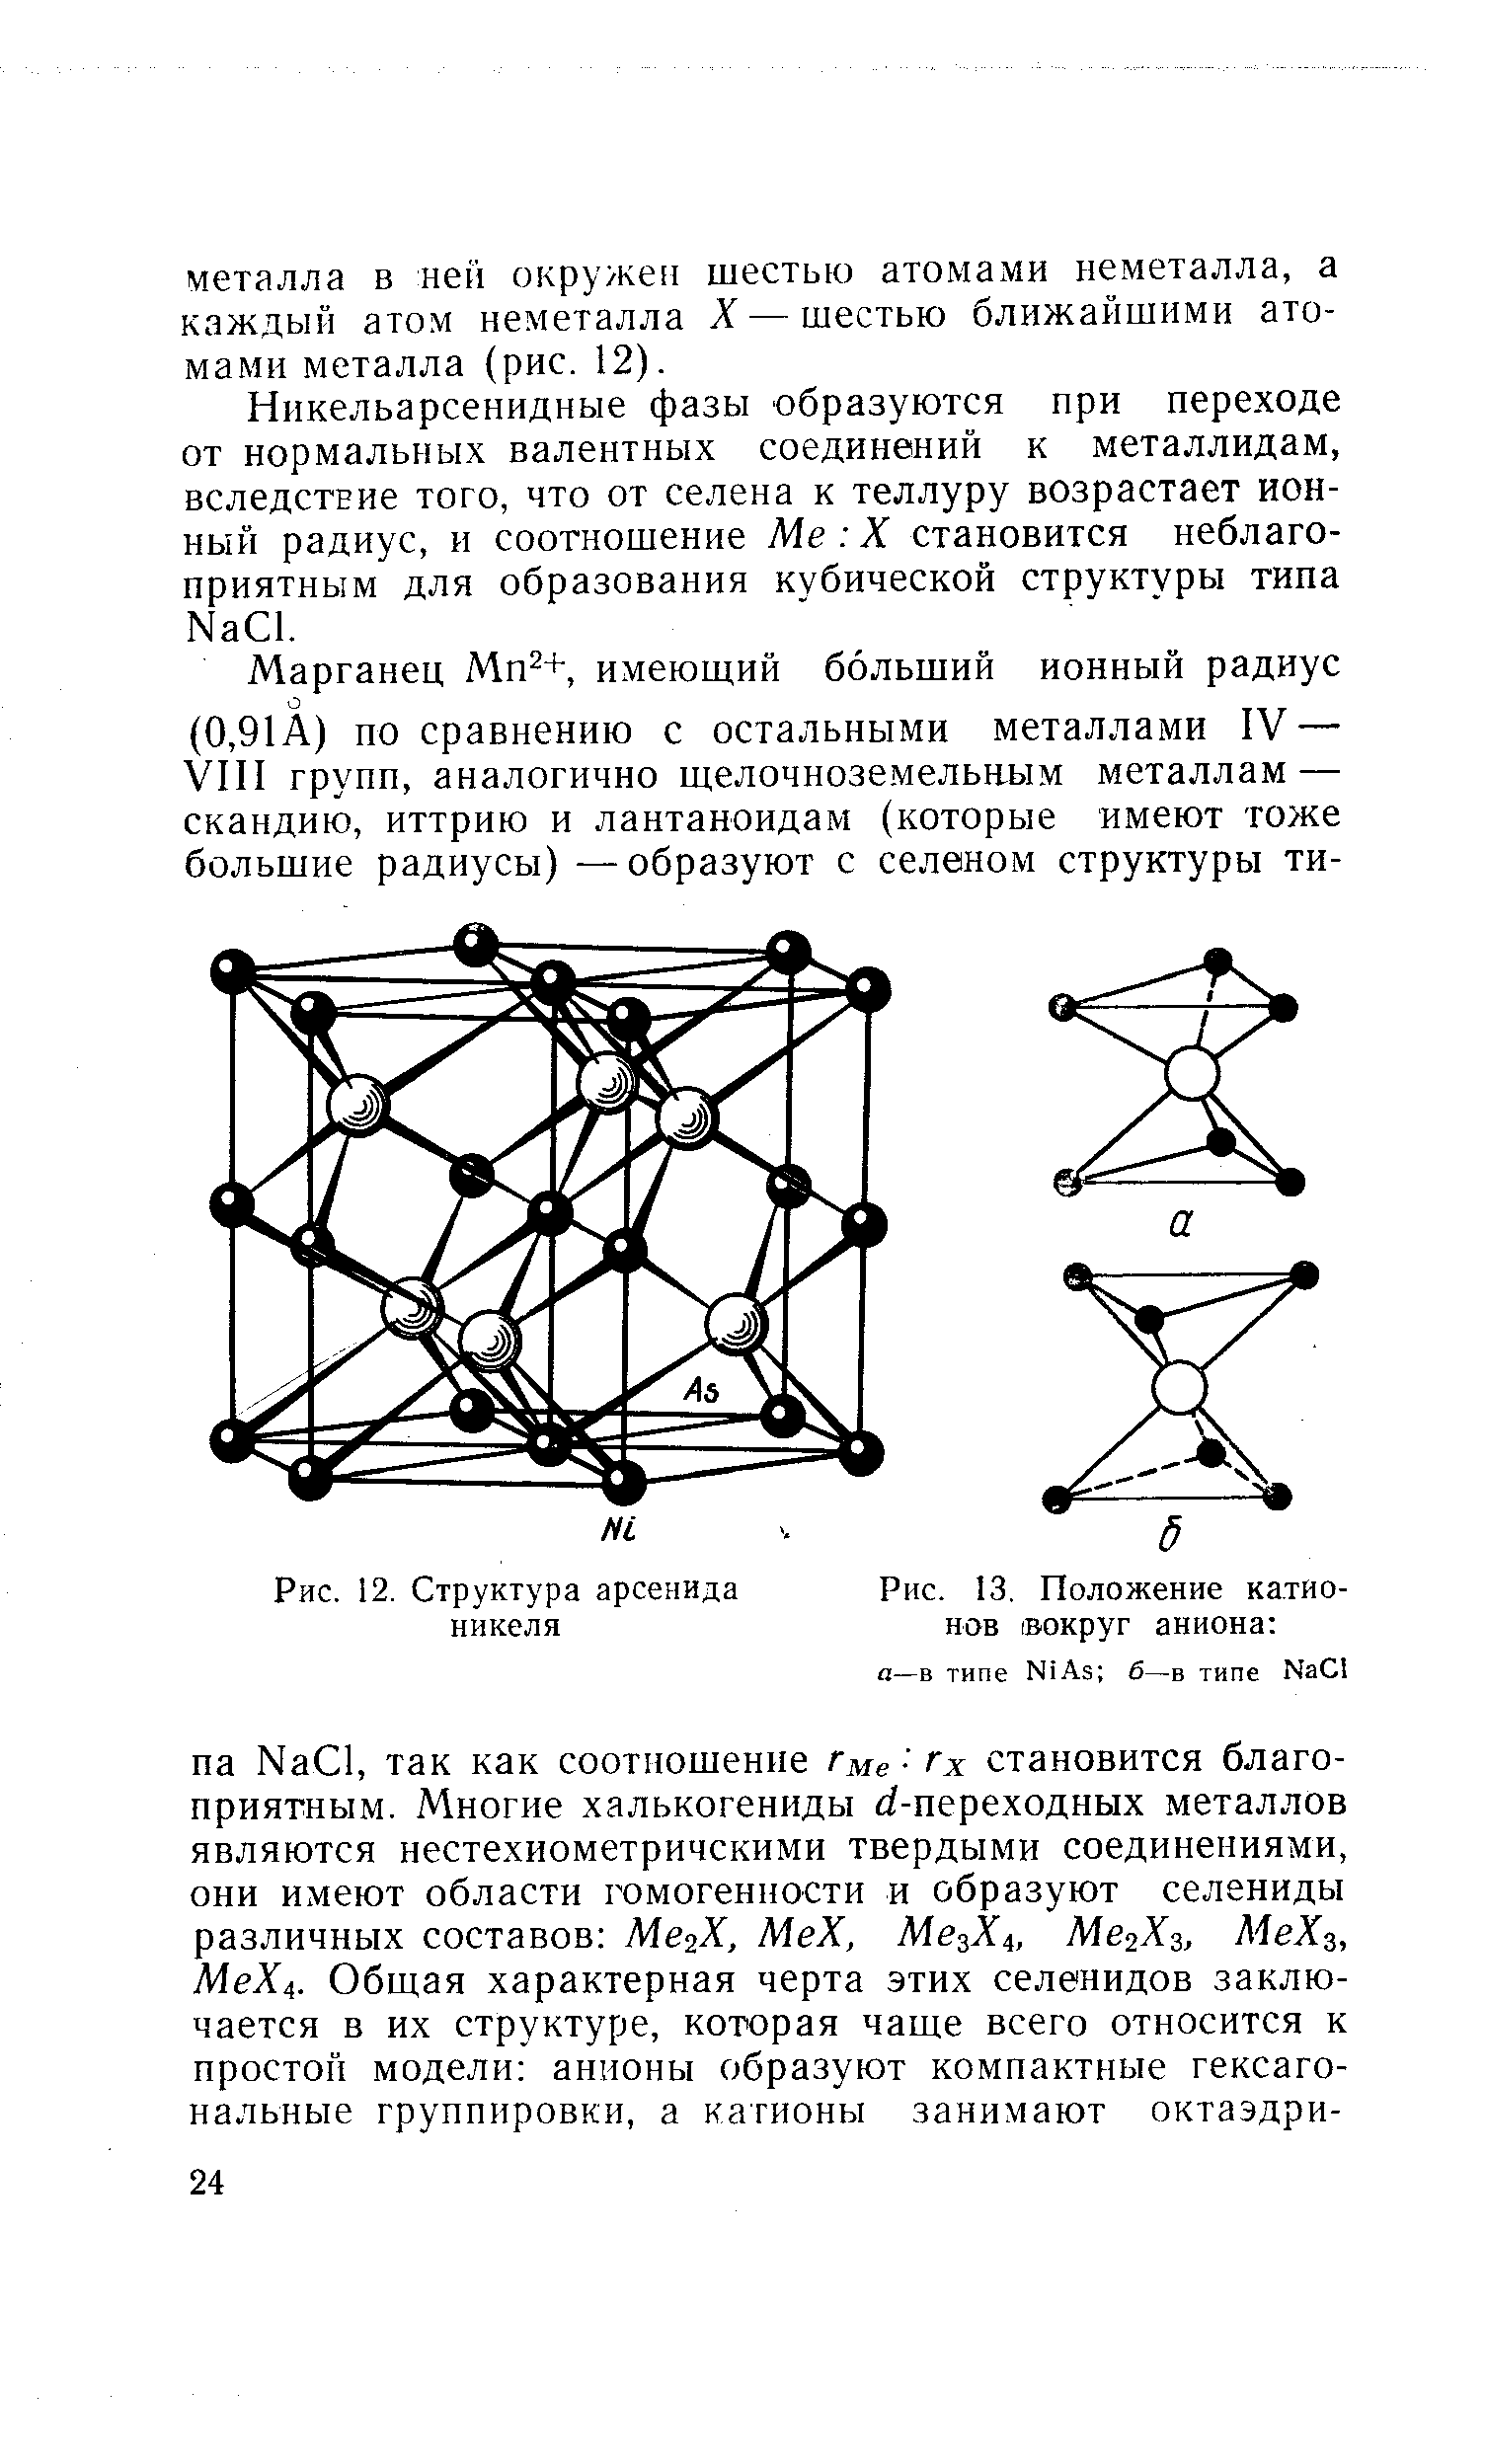 Рис. 12. Структура арсенида никеля
